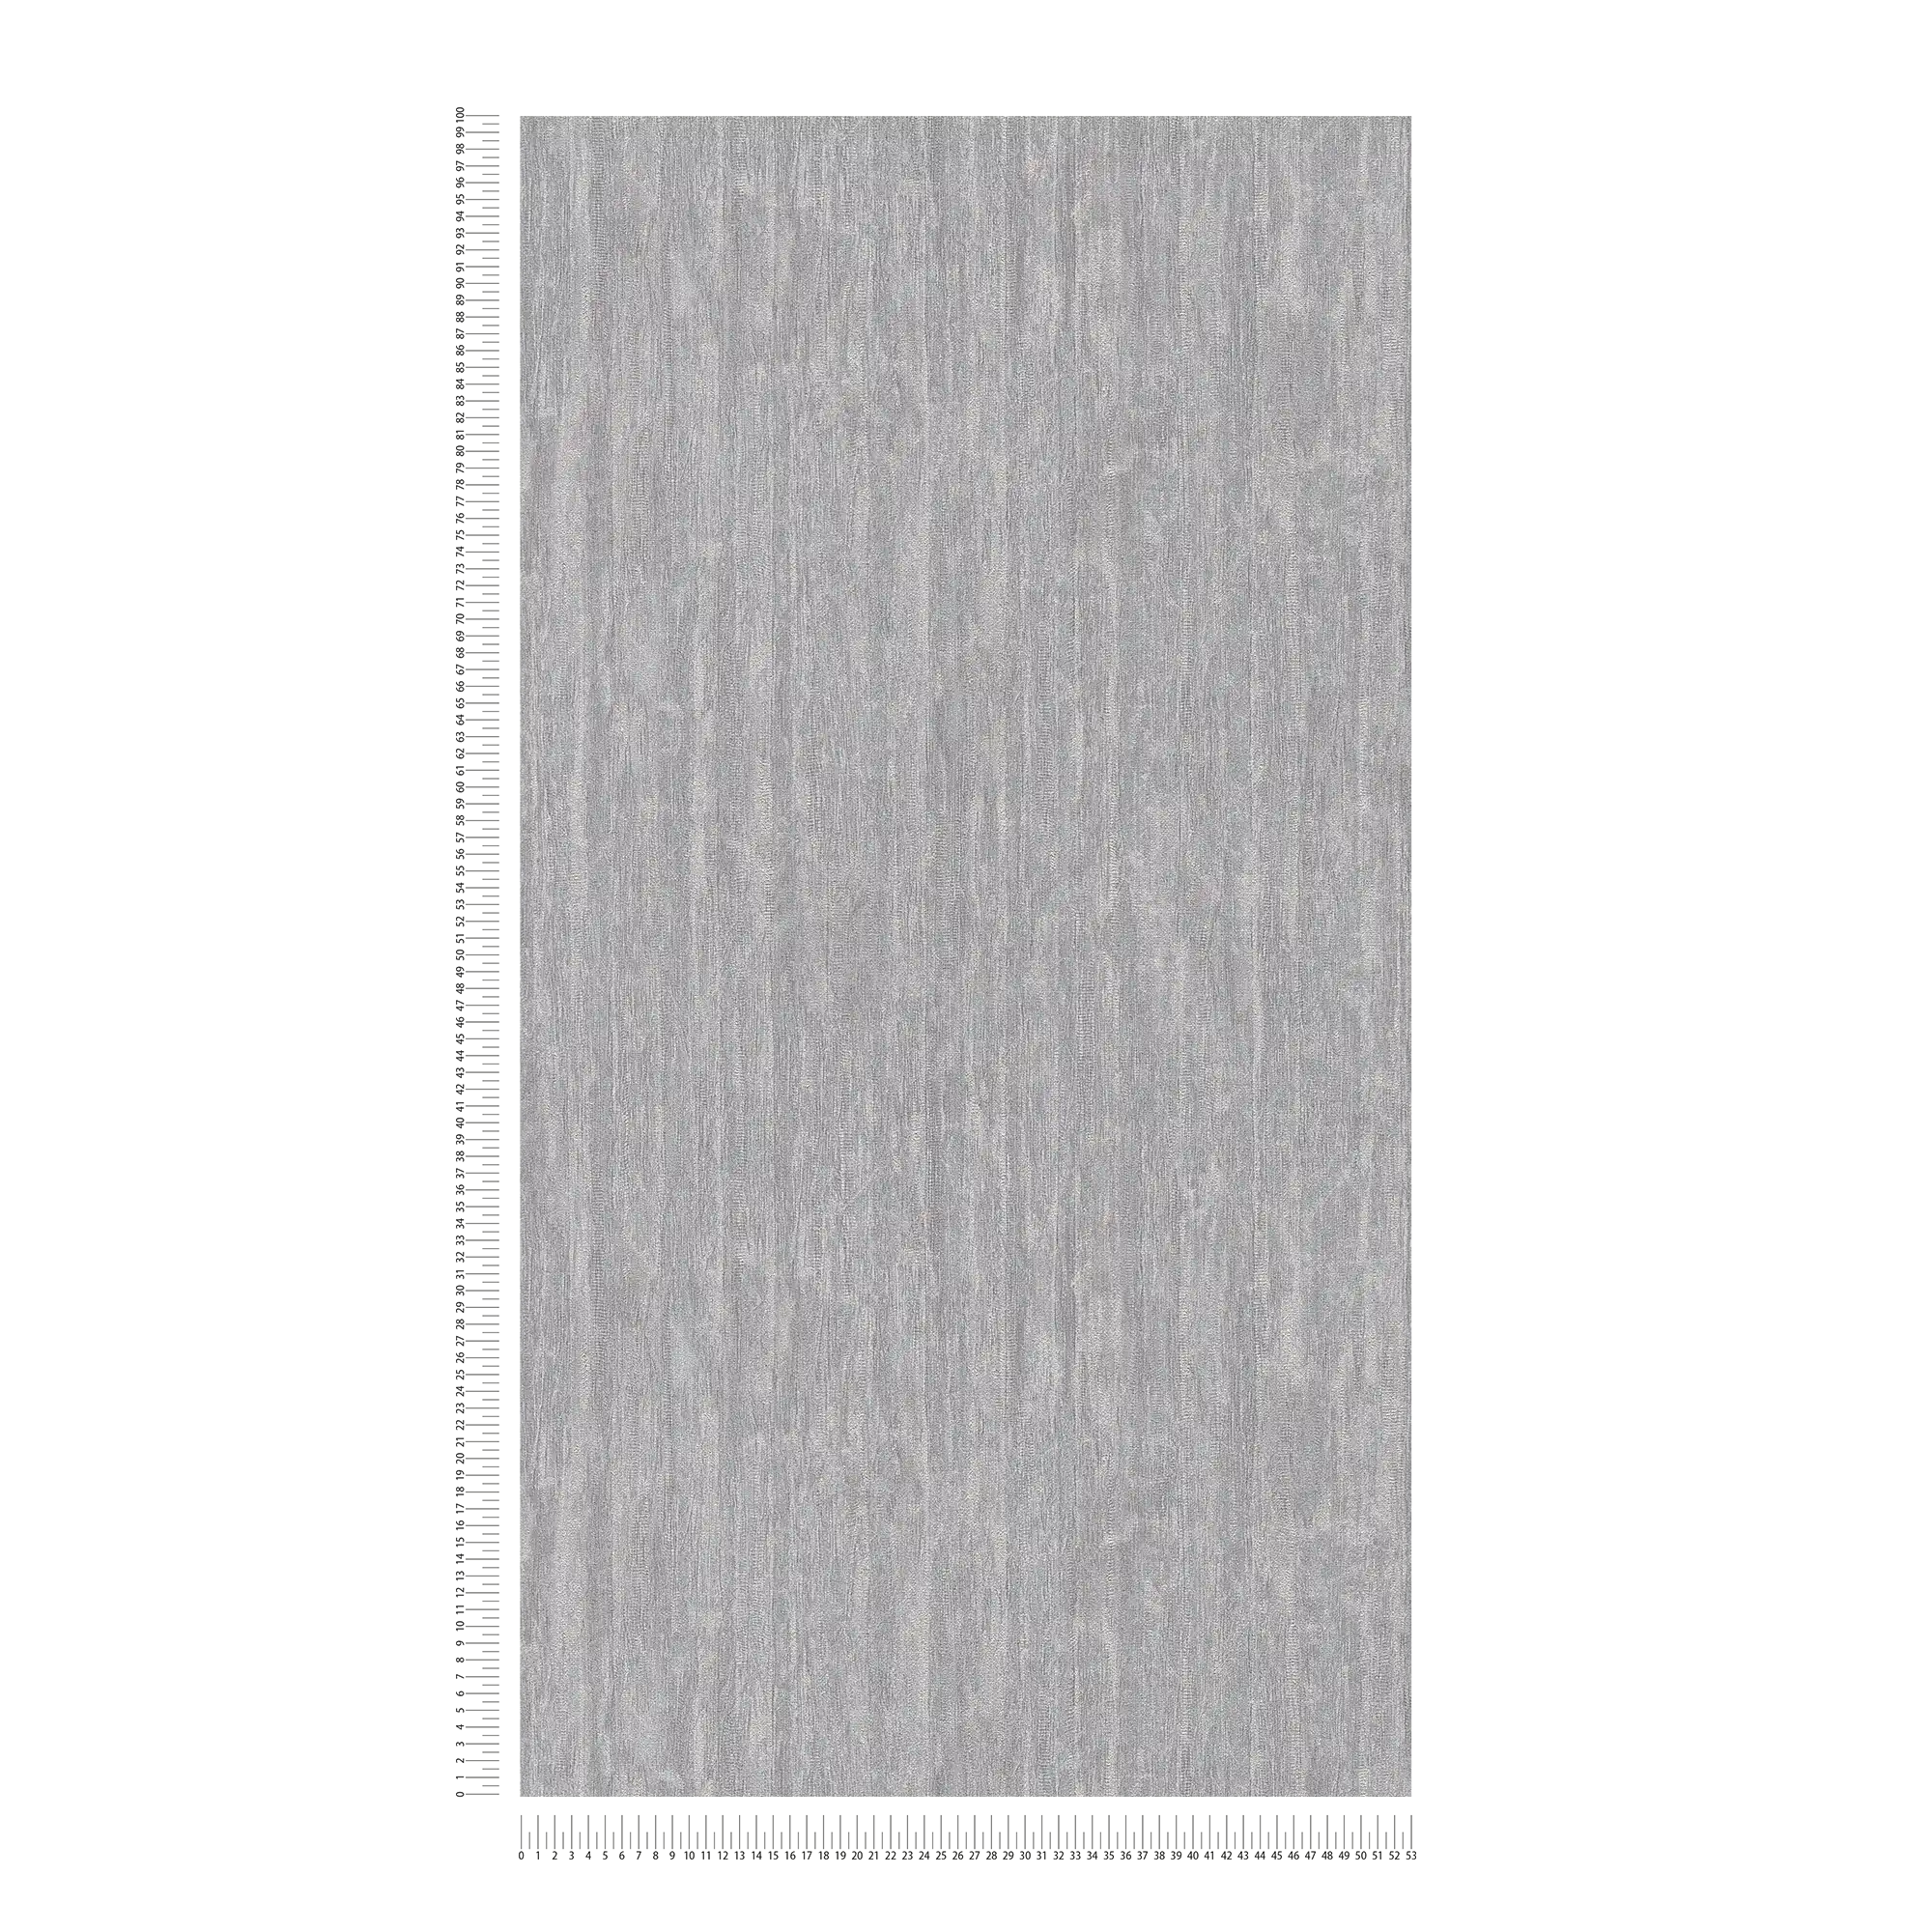             Papel pintado ligeramente brillante con motivo de líneas - gris, plata, metálico
        